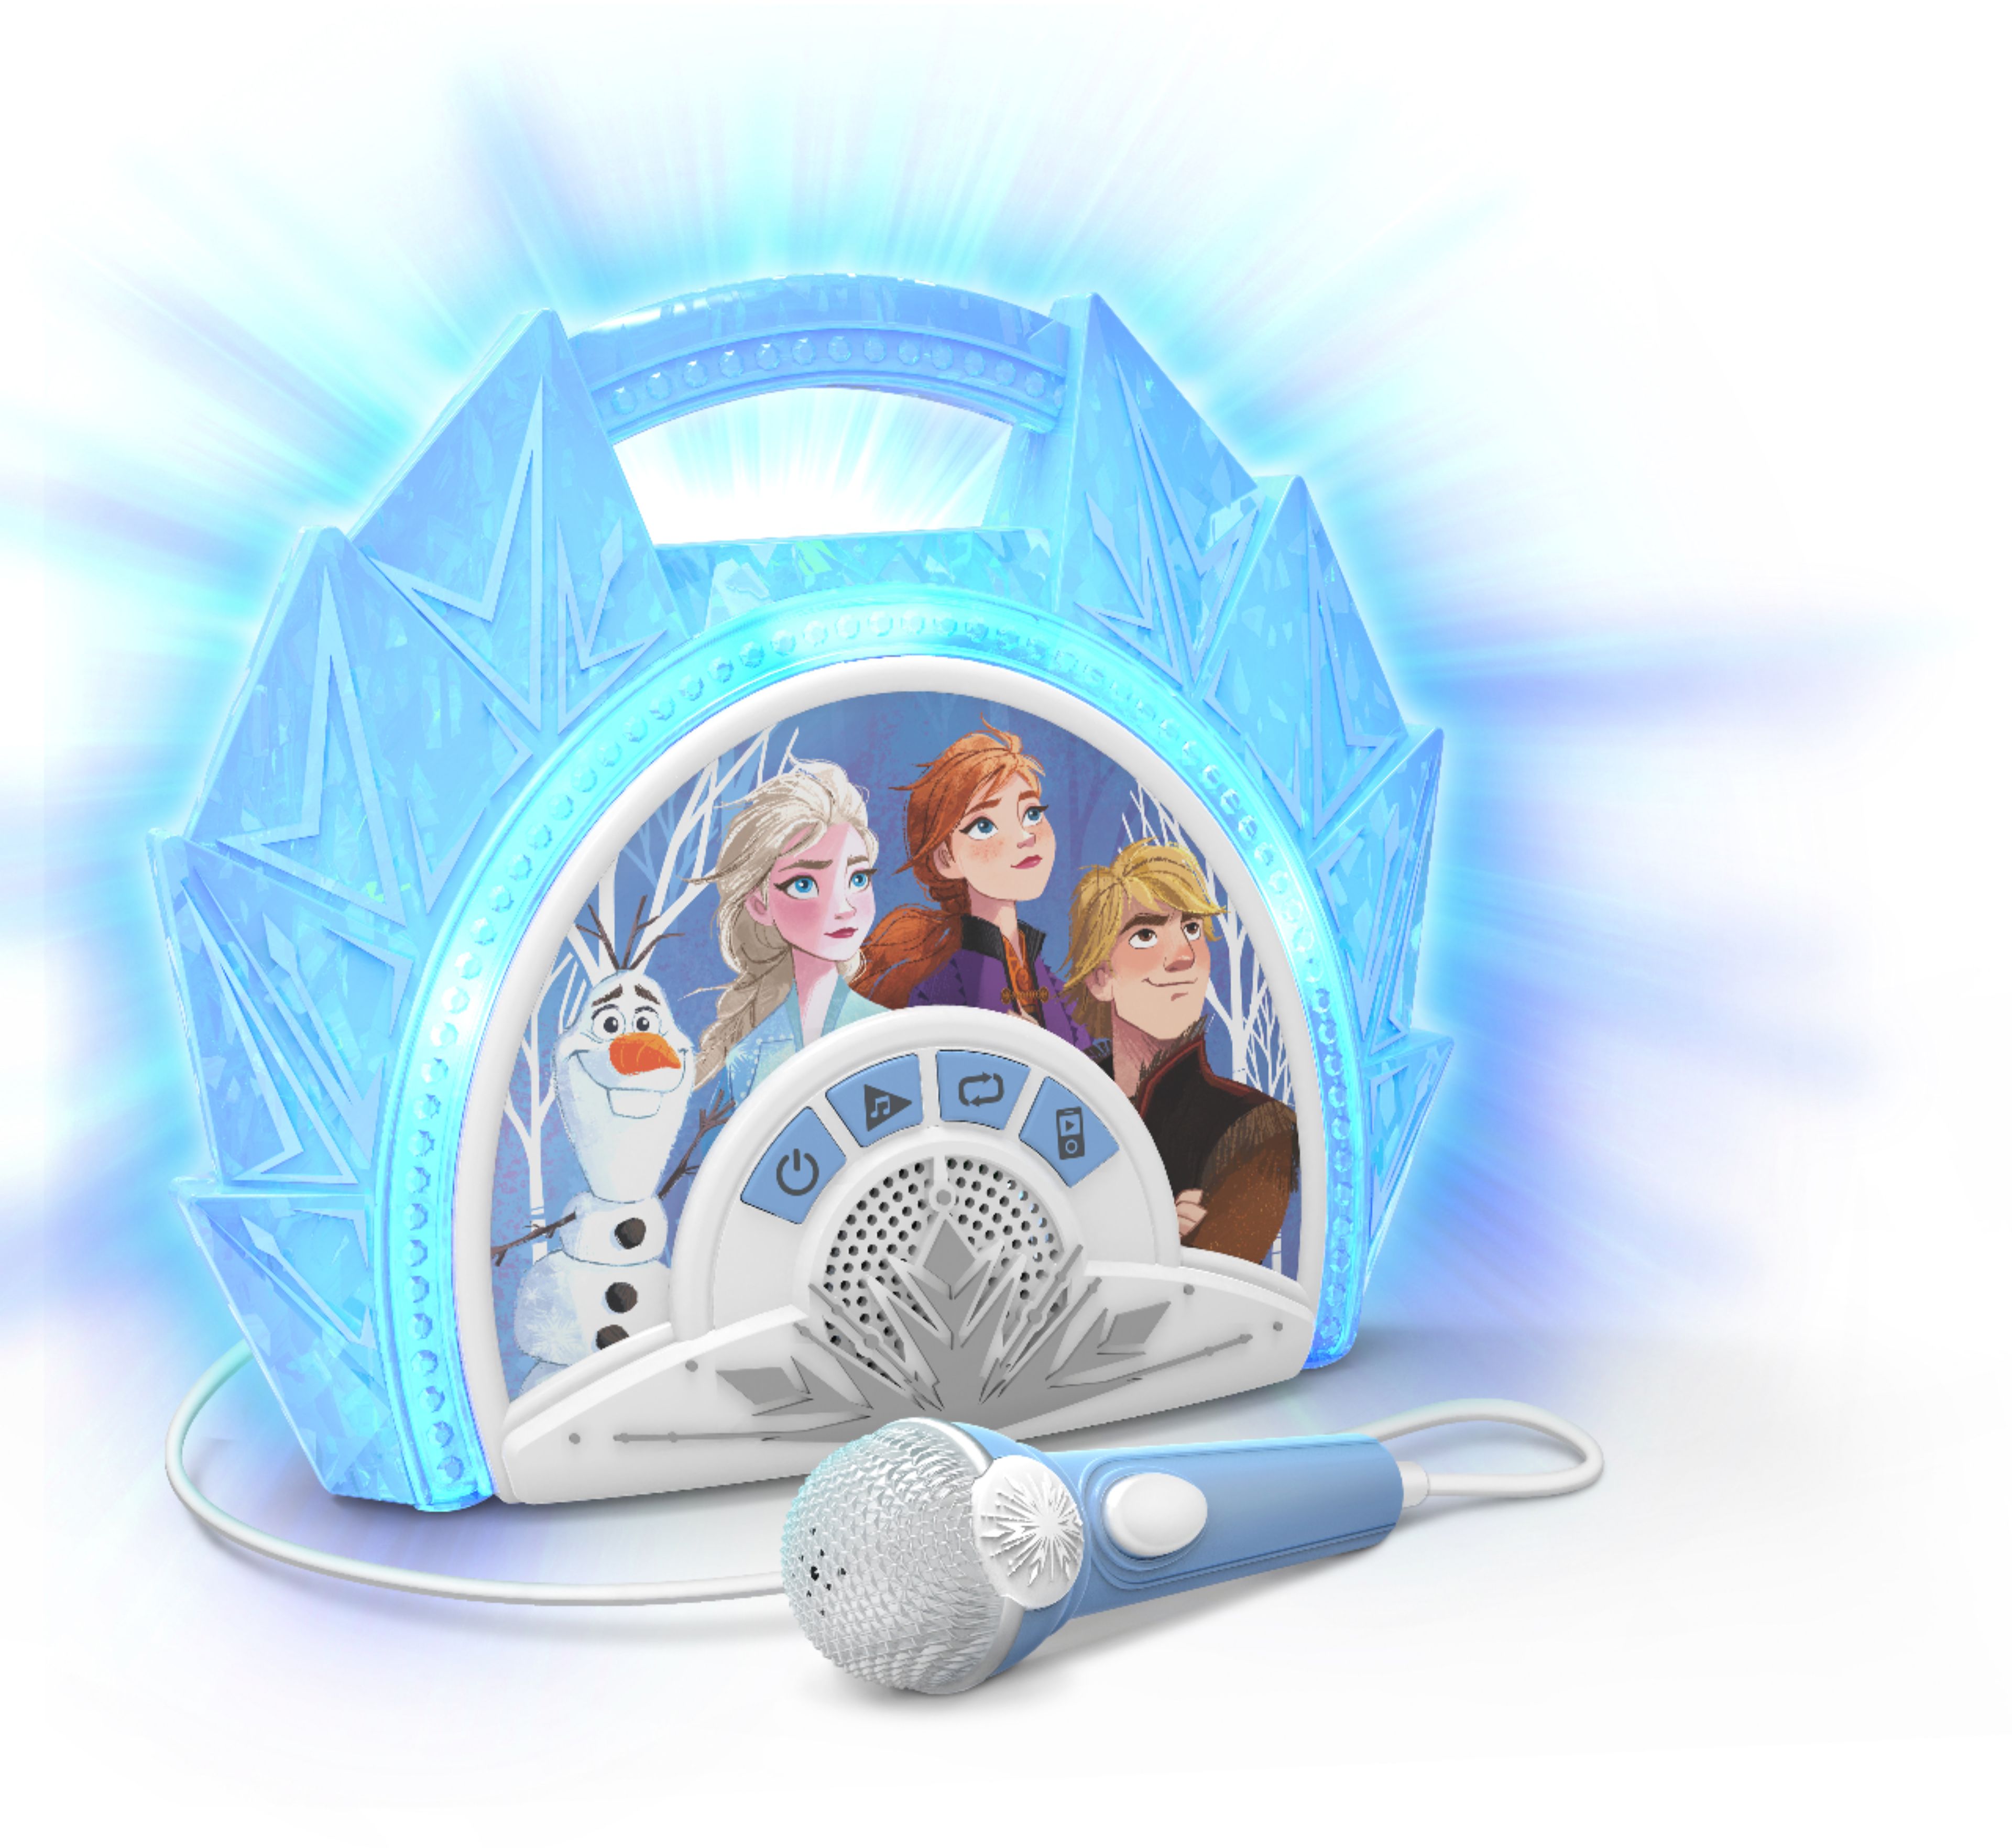 Ekids Frozen Ii Sing Along Boombox Karaoke System Light Blue White Fr 115 Emv9m Best Buy